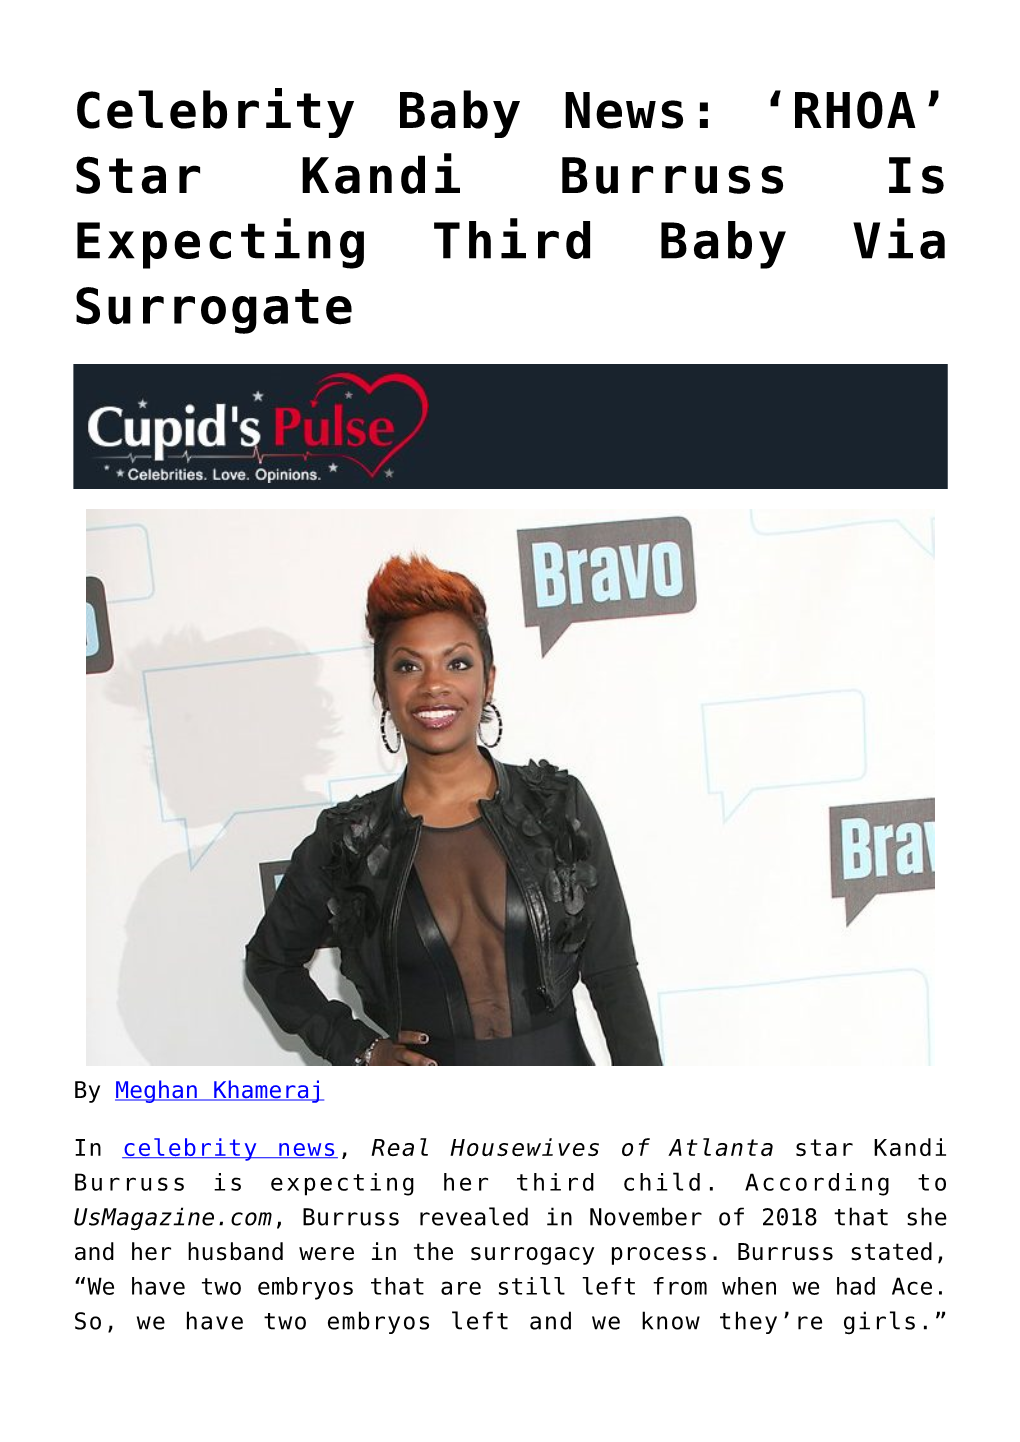 Star Kandi Burruss Is Expecting Third Baby Via Surrogate